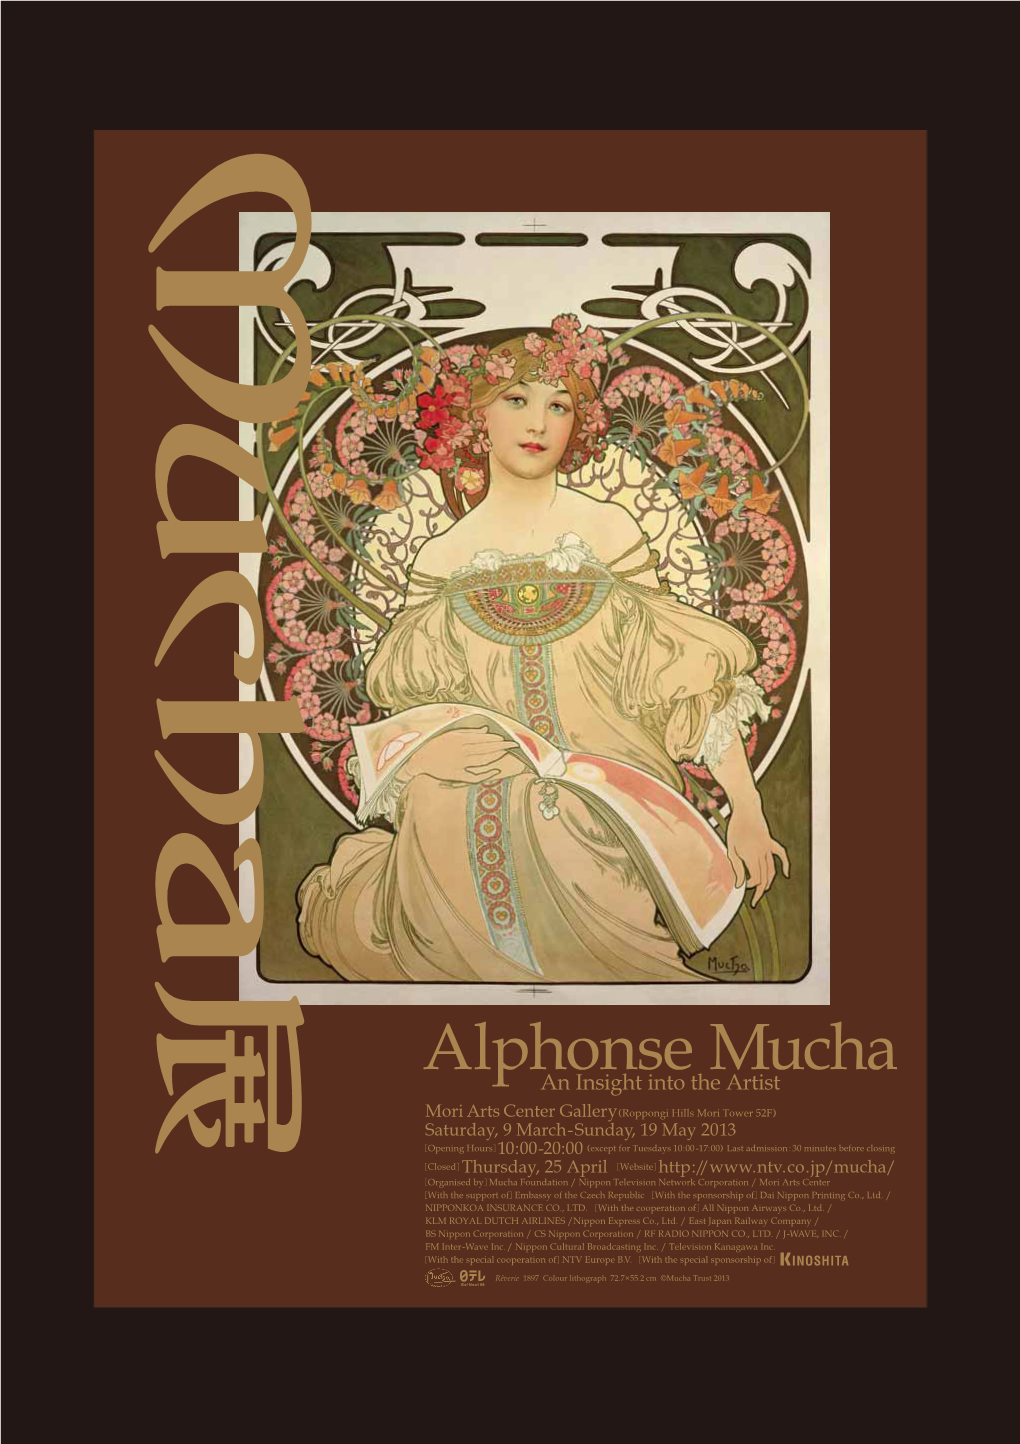 Alphonse Mucha : an Insight Into the Artist ” Is a Major Retrospective of the Renowned Czech Art Nouveau Artist Alphonse Mucha